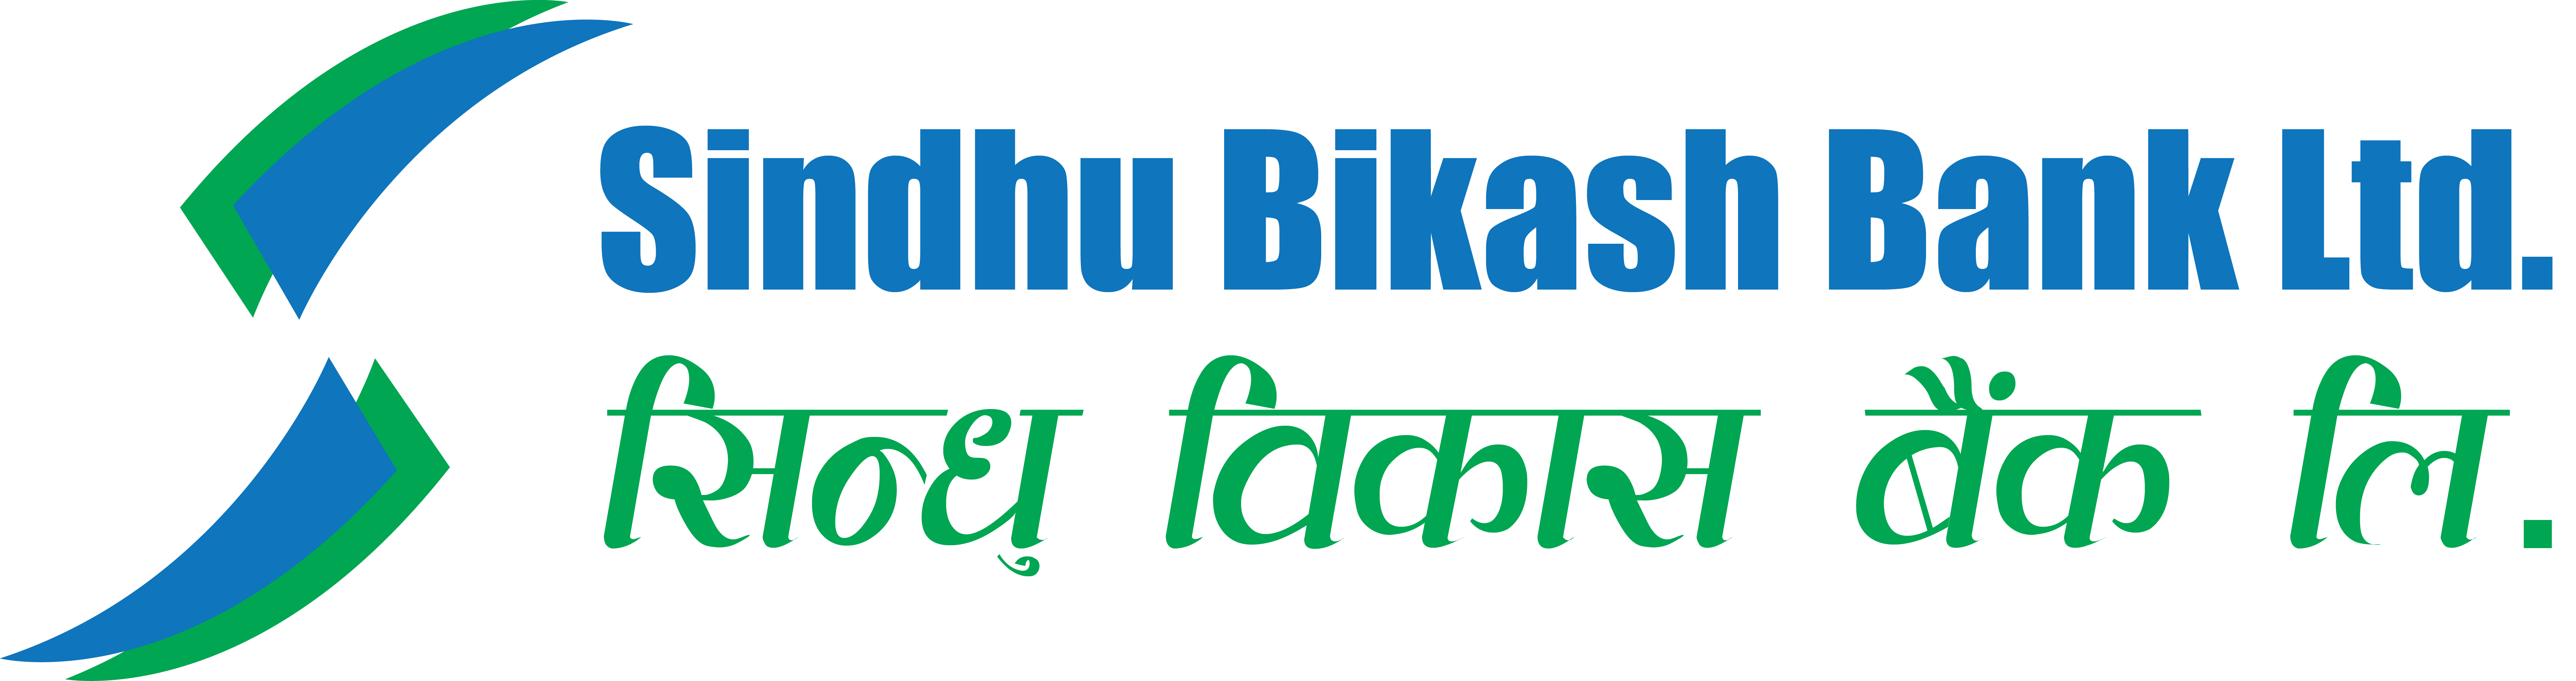 Sindhu Bikas Bank Ltd.